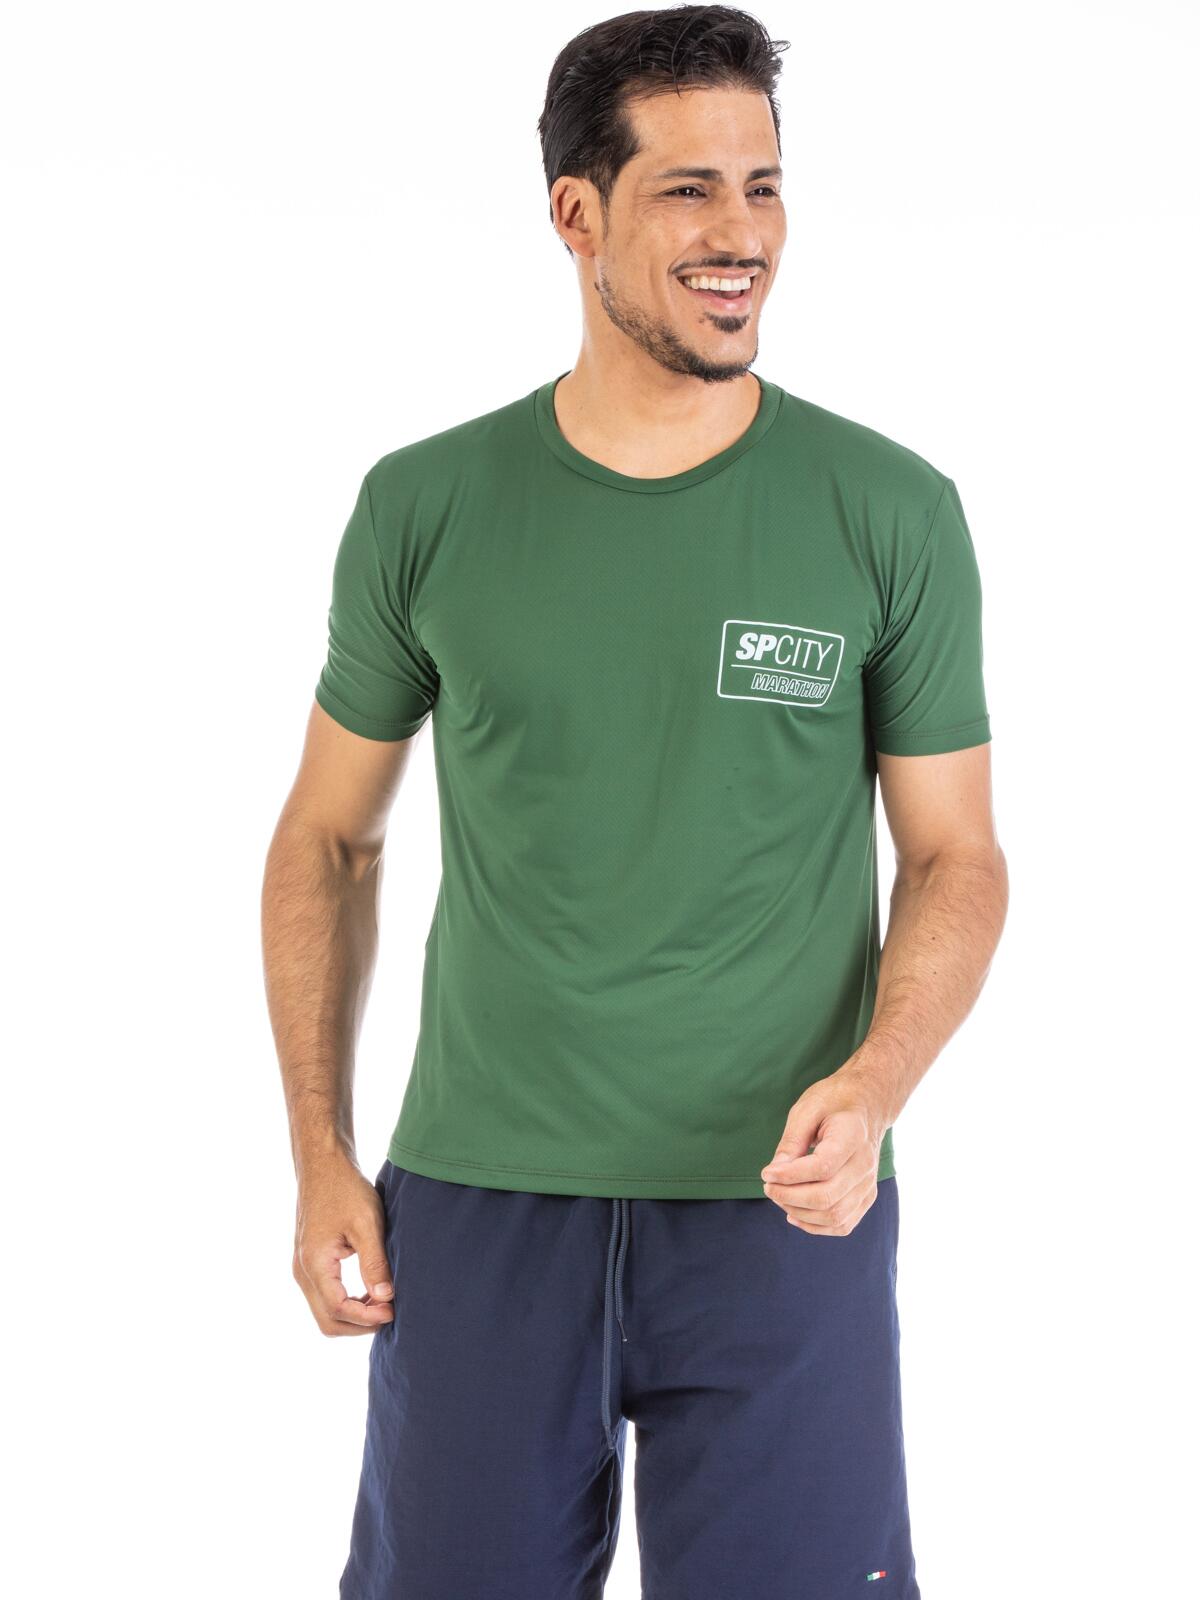 Camiseta Coleção SP City Verde